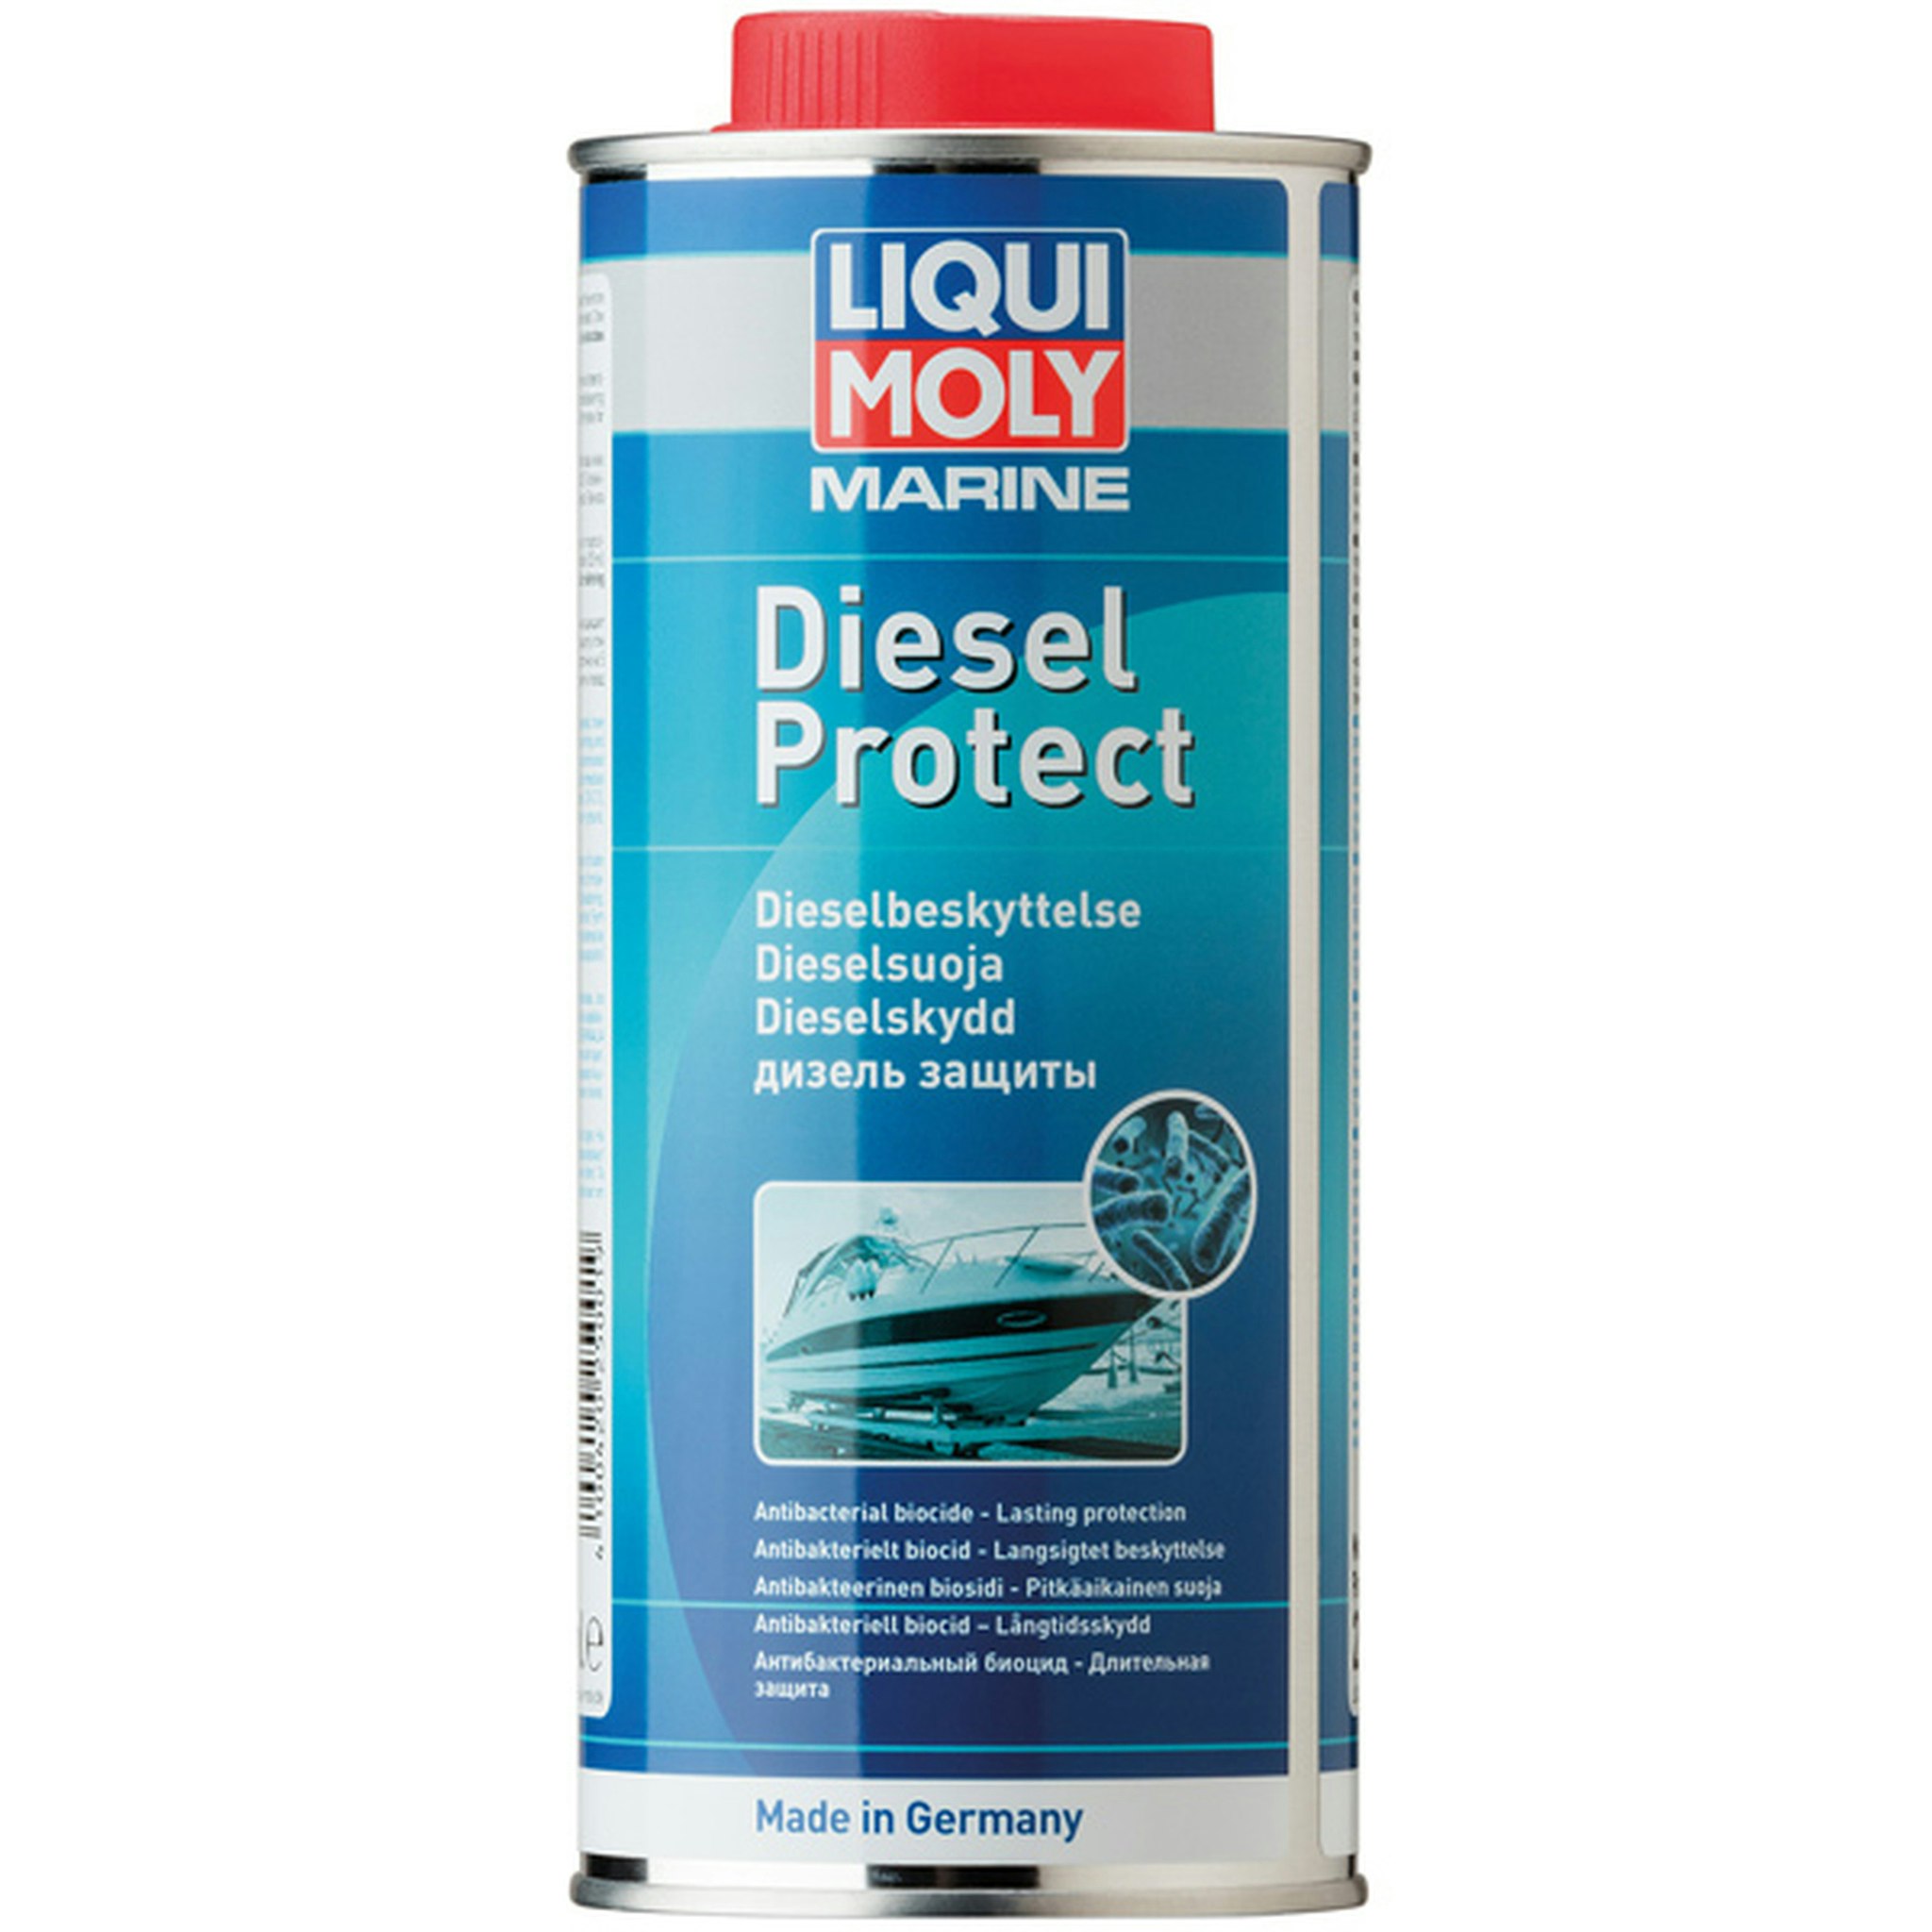 Liqui Moly marine dieselskydd